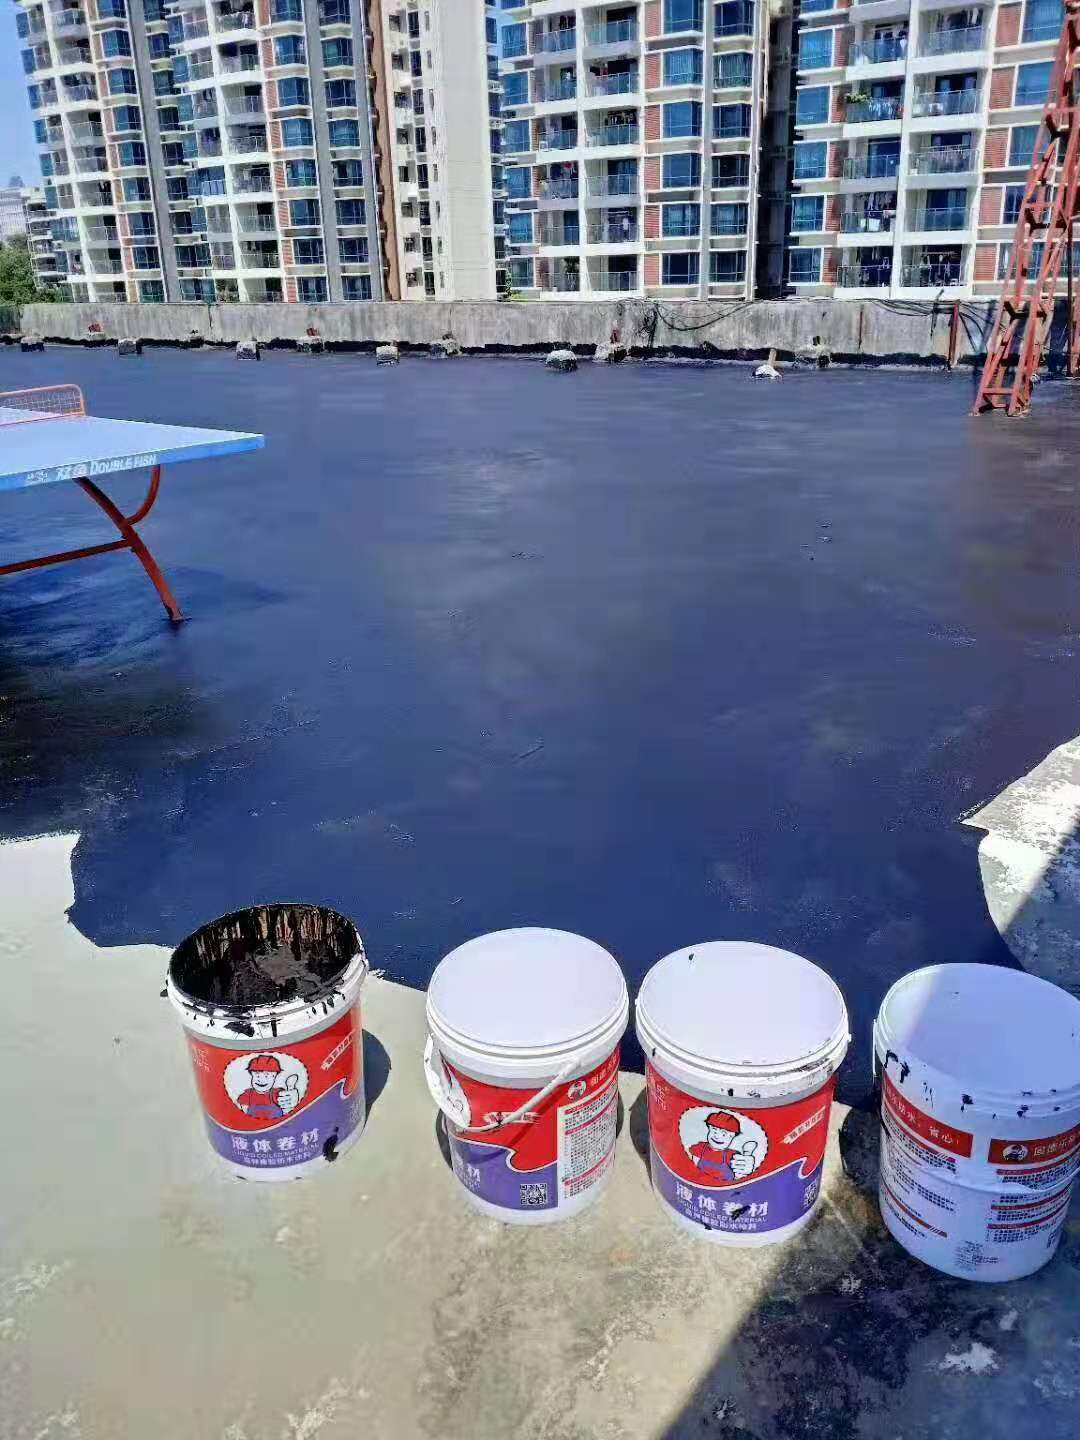 固德乐液体卷材施工楼面 一桶材料施工两面可涂刷面积 地下室防水涂料